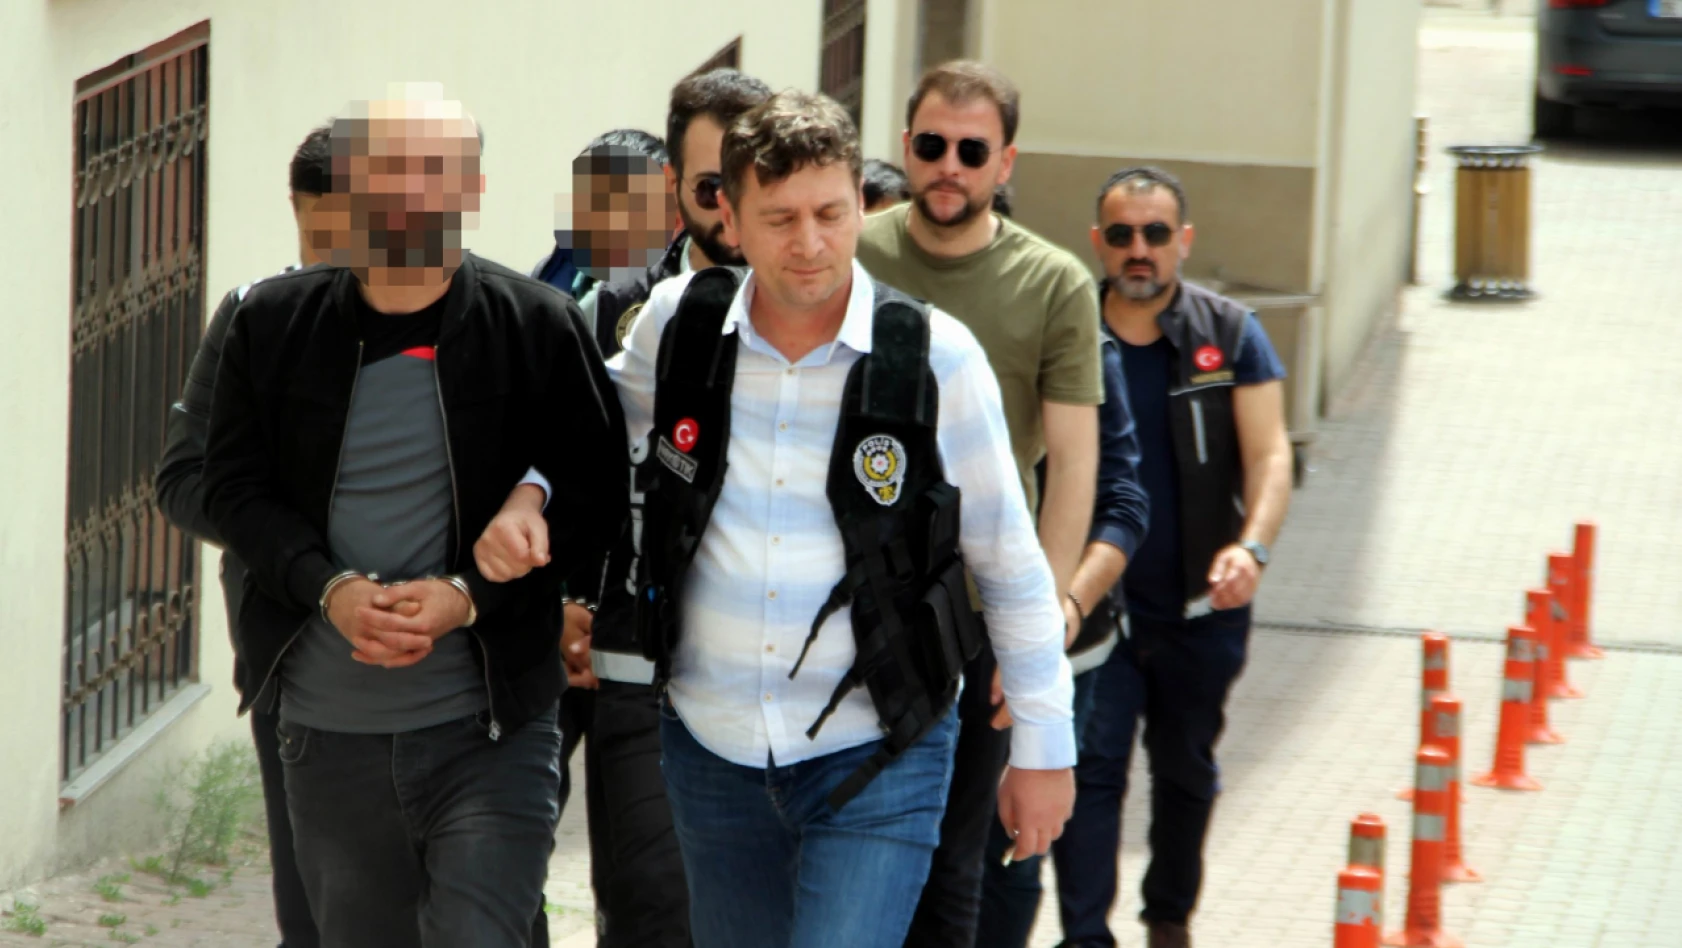 Kayseri'de uyuşturucu operasyonu: 6 gözaltı